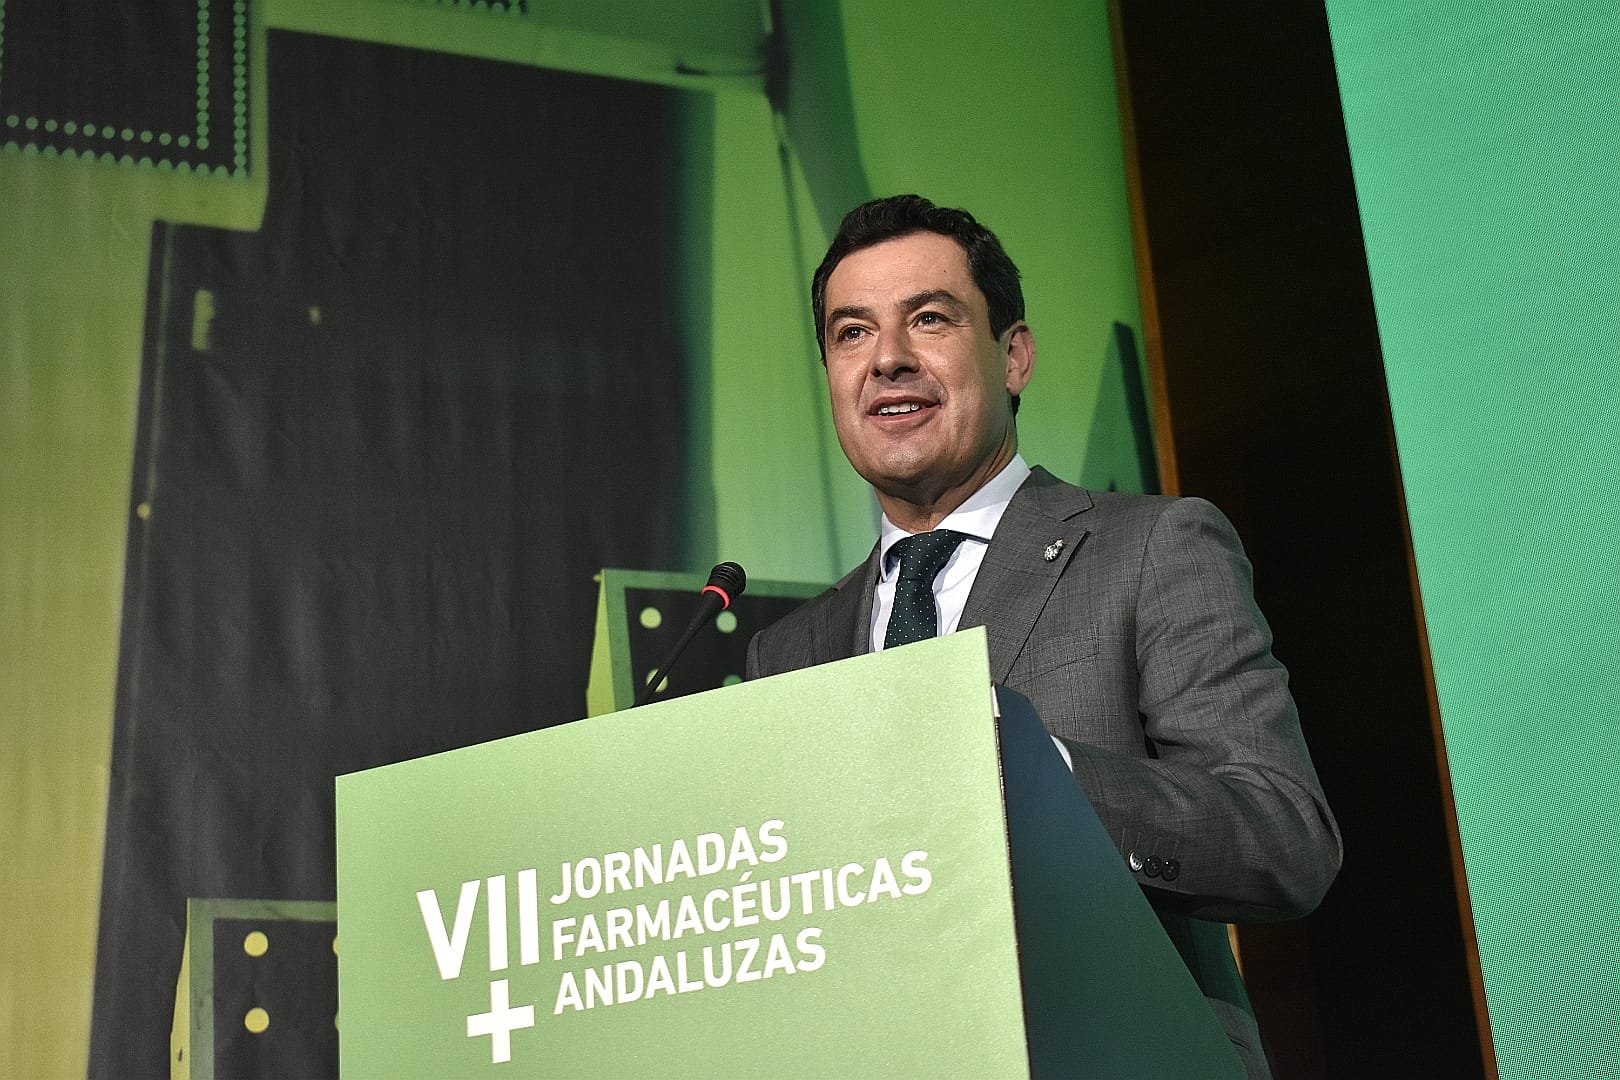 El presidente de la Junta de Andalucía reconoce el papel de los farmacéuticos durante la pandemia en la atención a las personas más vulnerables y anuncia que incorporará a la farmacia en la estrategia frente a la soledad no deseada